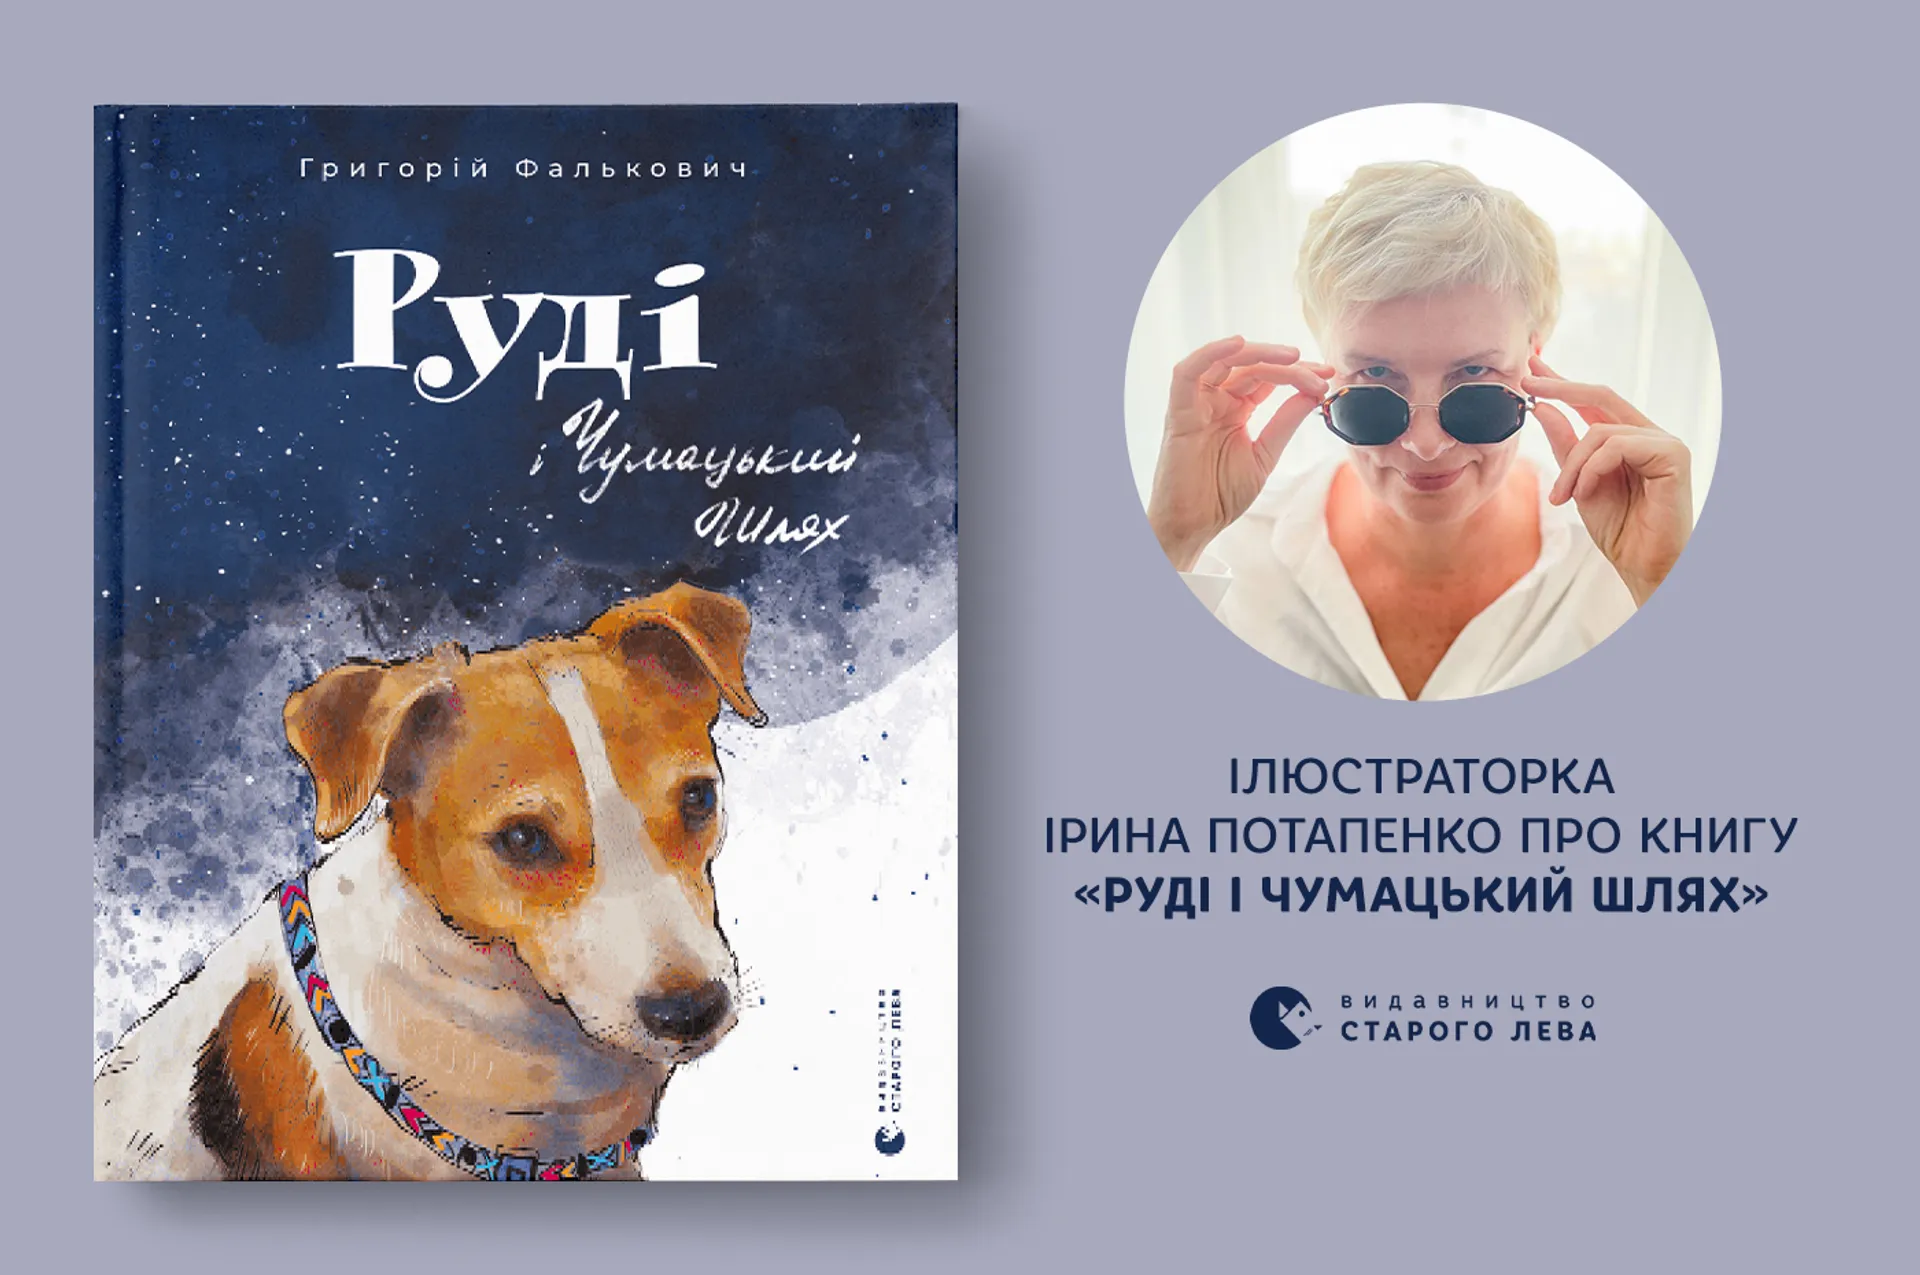 Ілюстраторка Ірина Потапенко про книгу «Руді і Чумацький шлях»